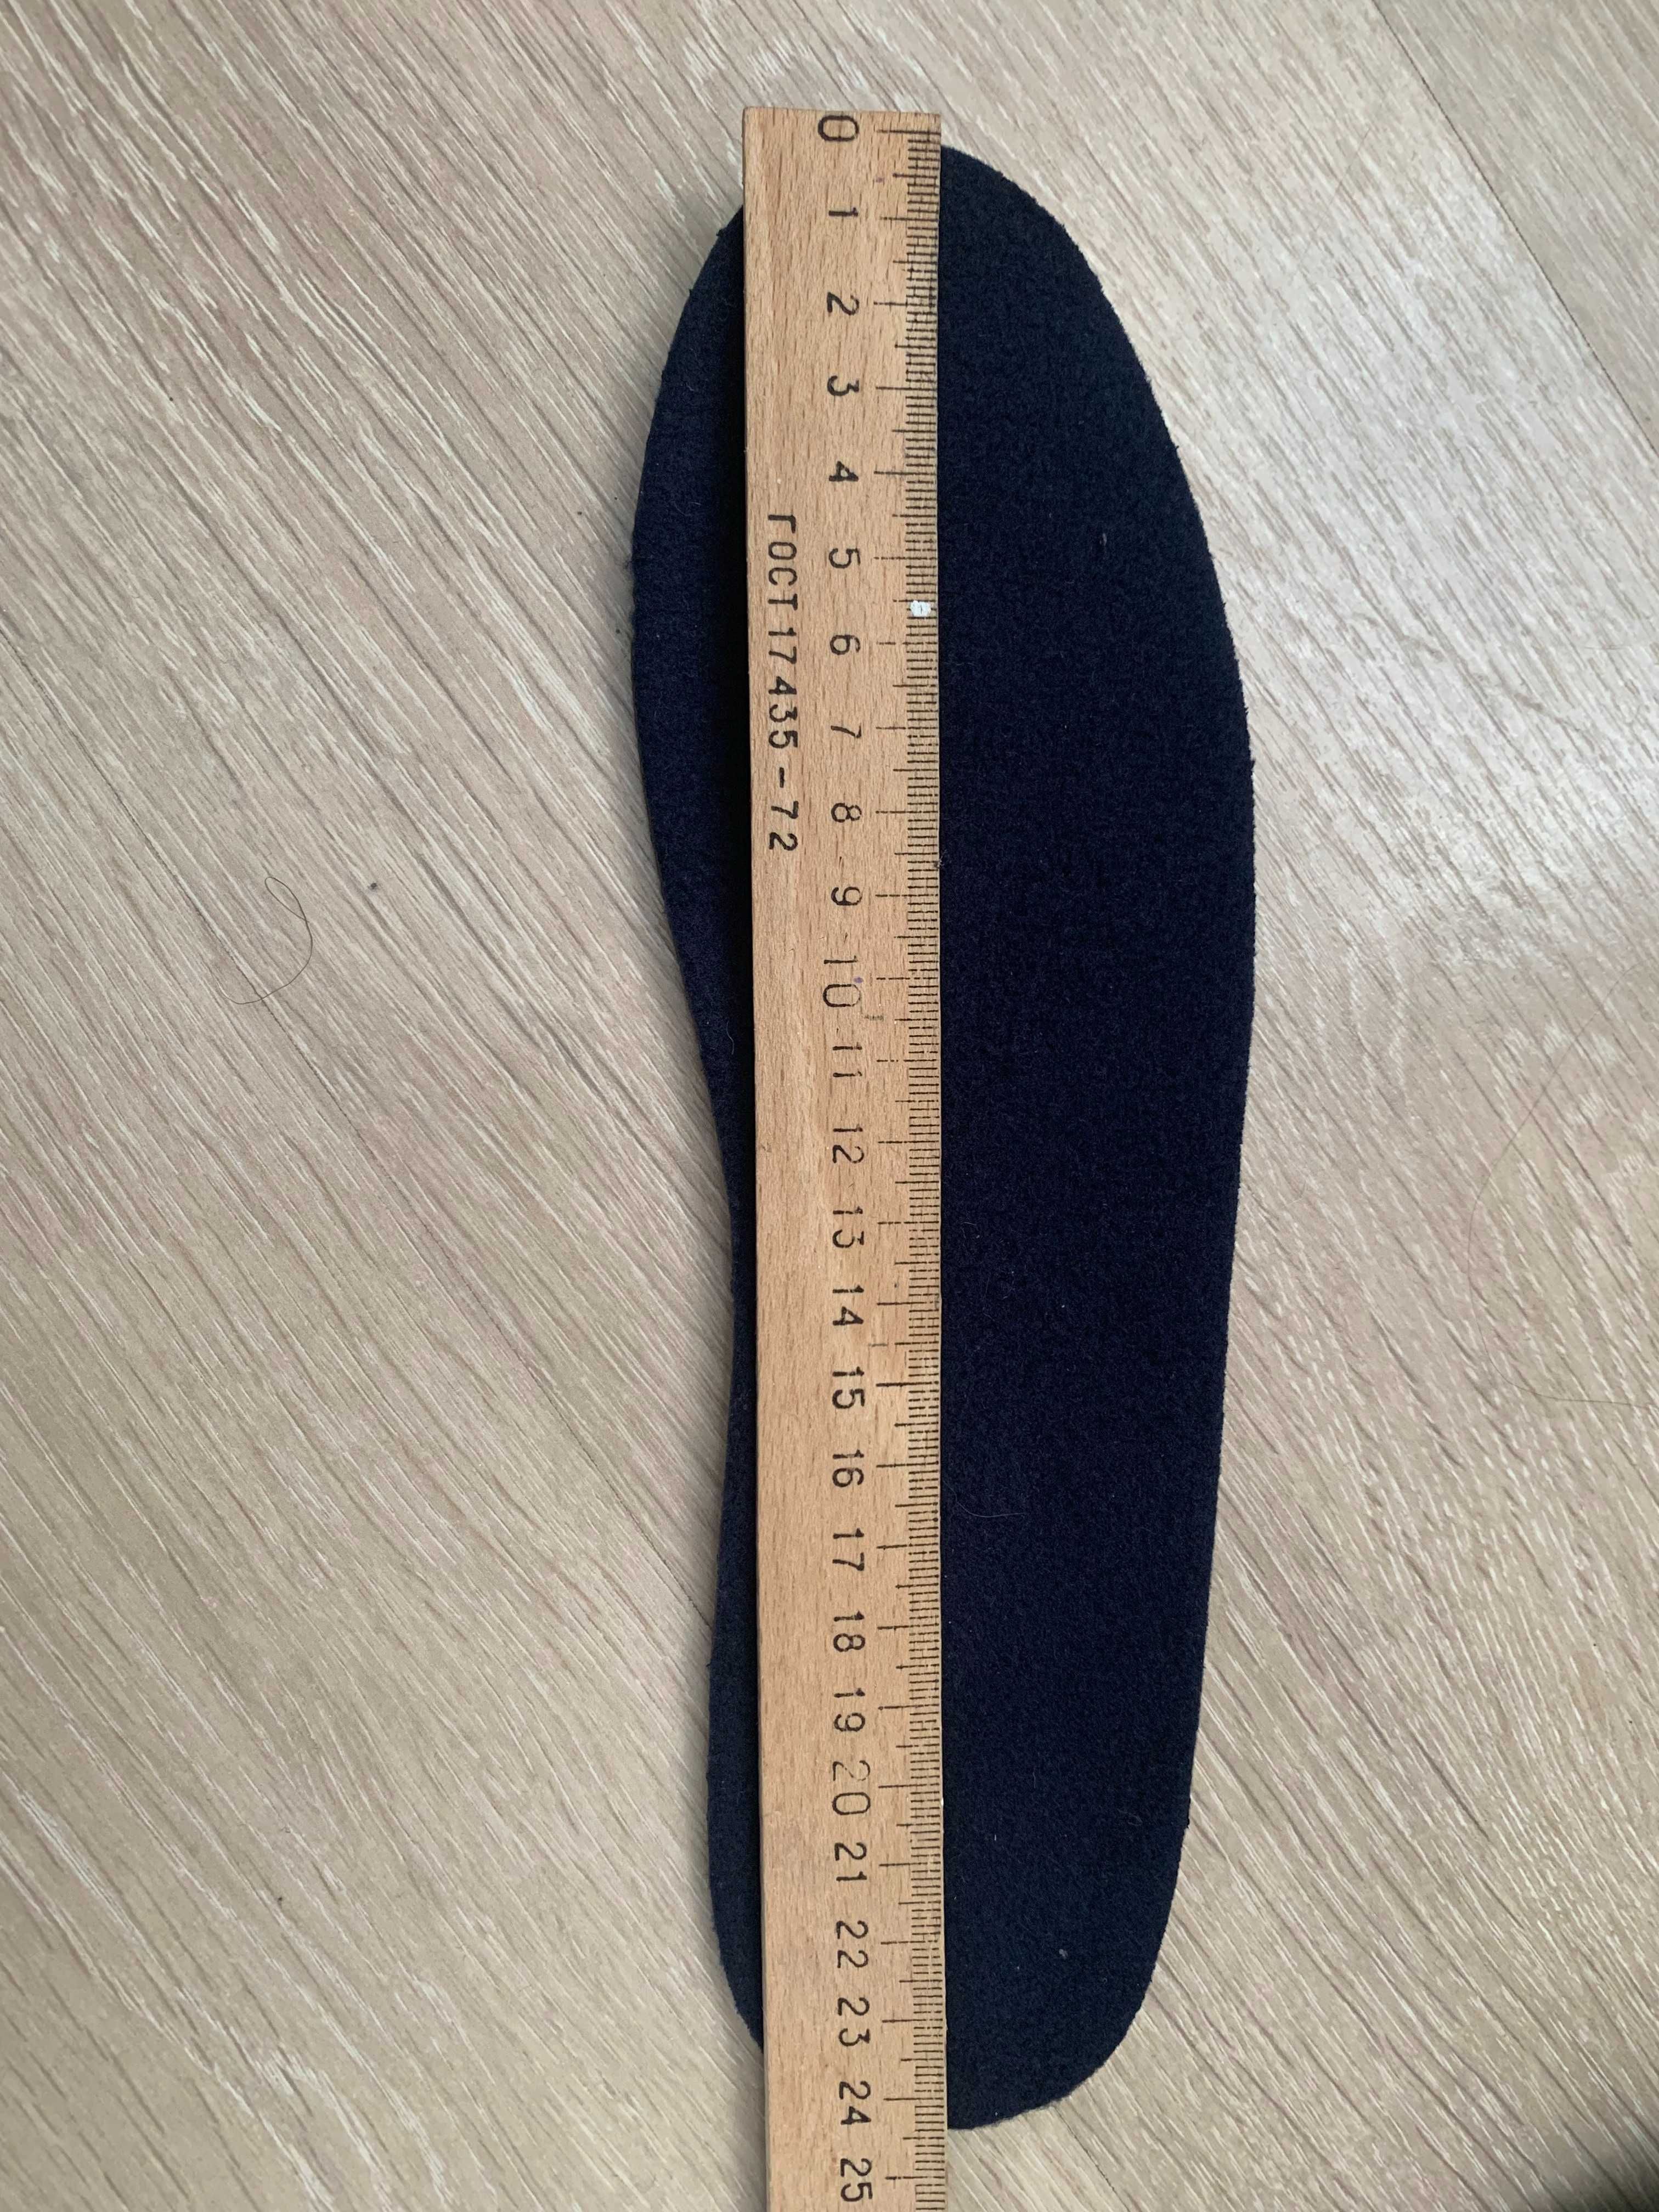 Сапоги сноубутсы для мальчика 37 размер,24.5 см стелька темно синие